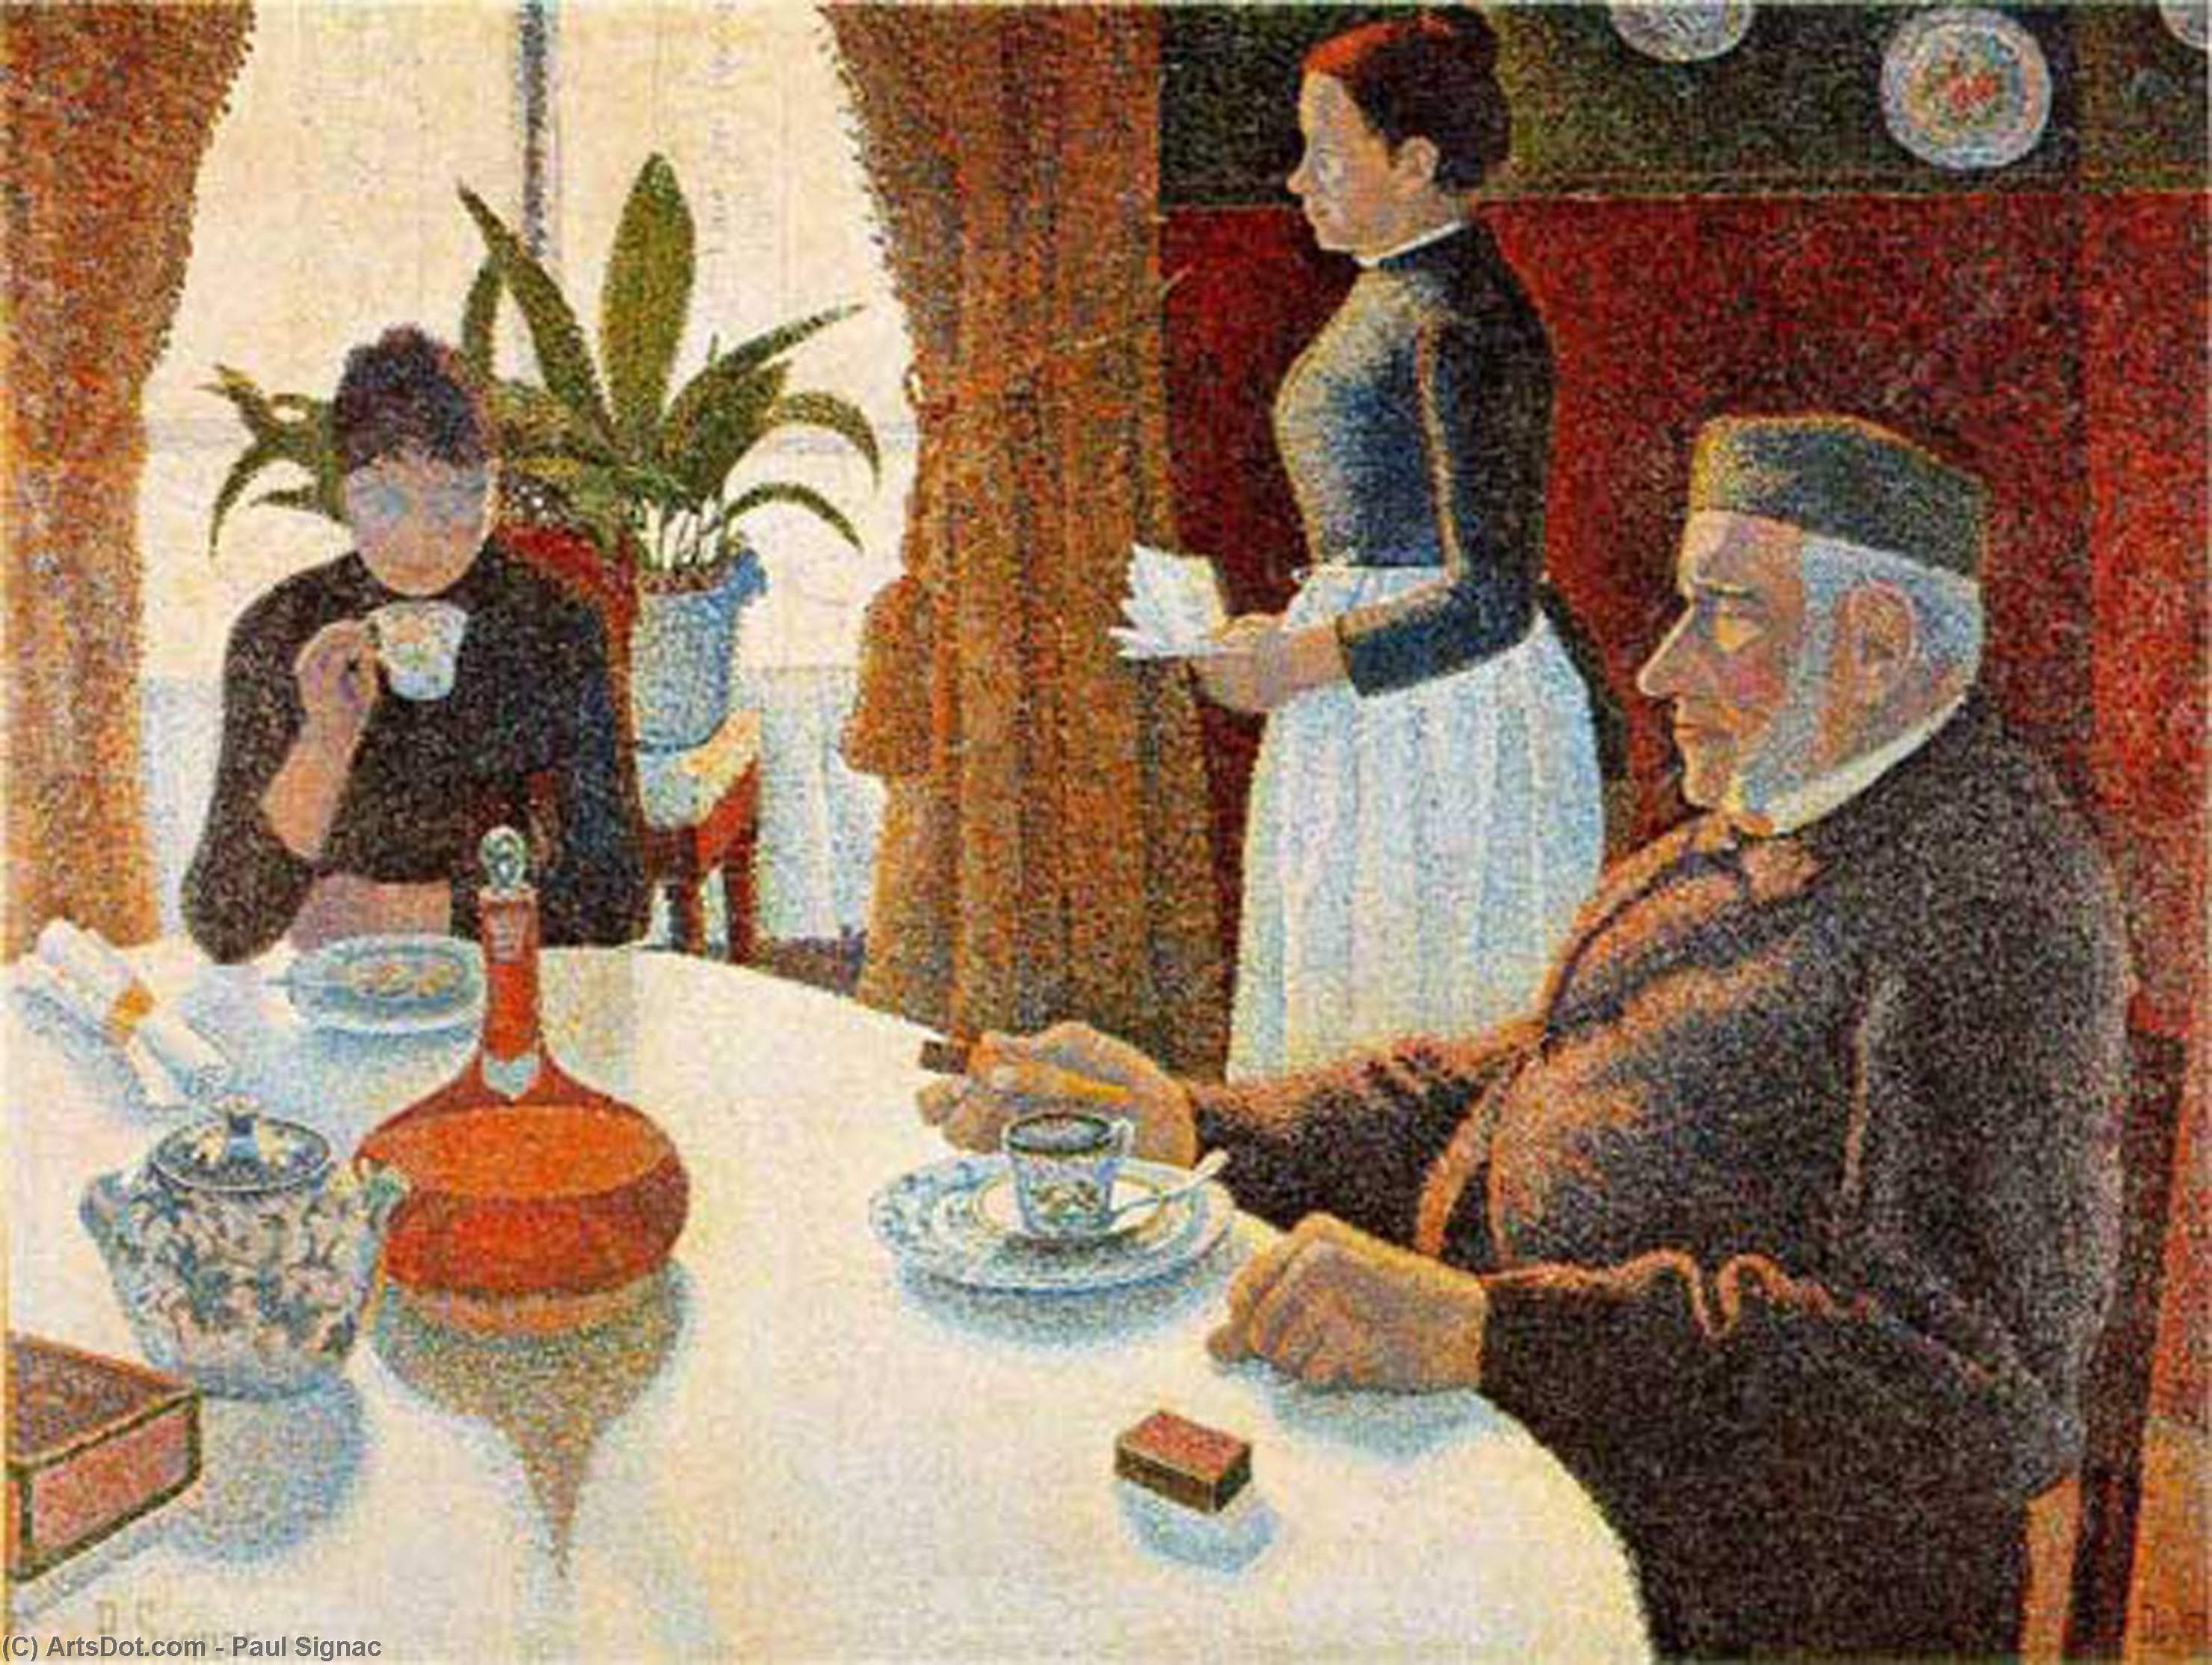 Ordem Gravura De Qualidade De Museu Café da manhã (The Dining Room), 1887 por Paul Signac (1863-1935, France) | ArtsDot.com